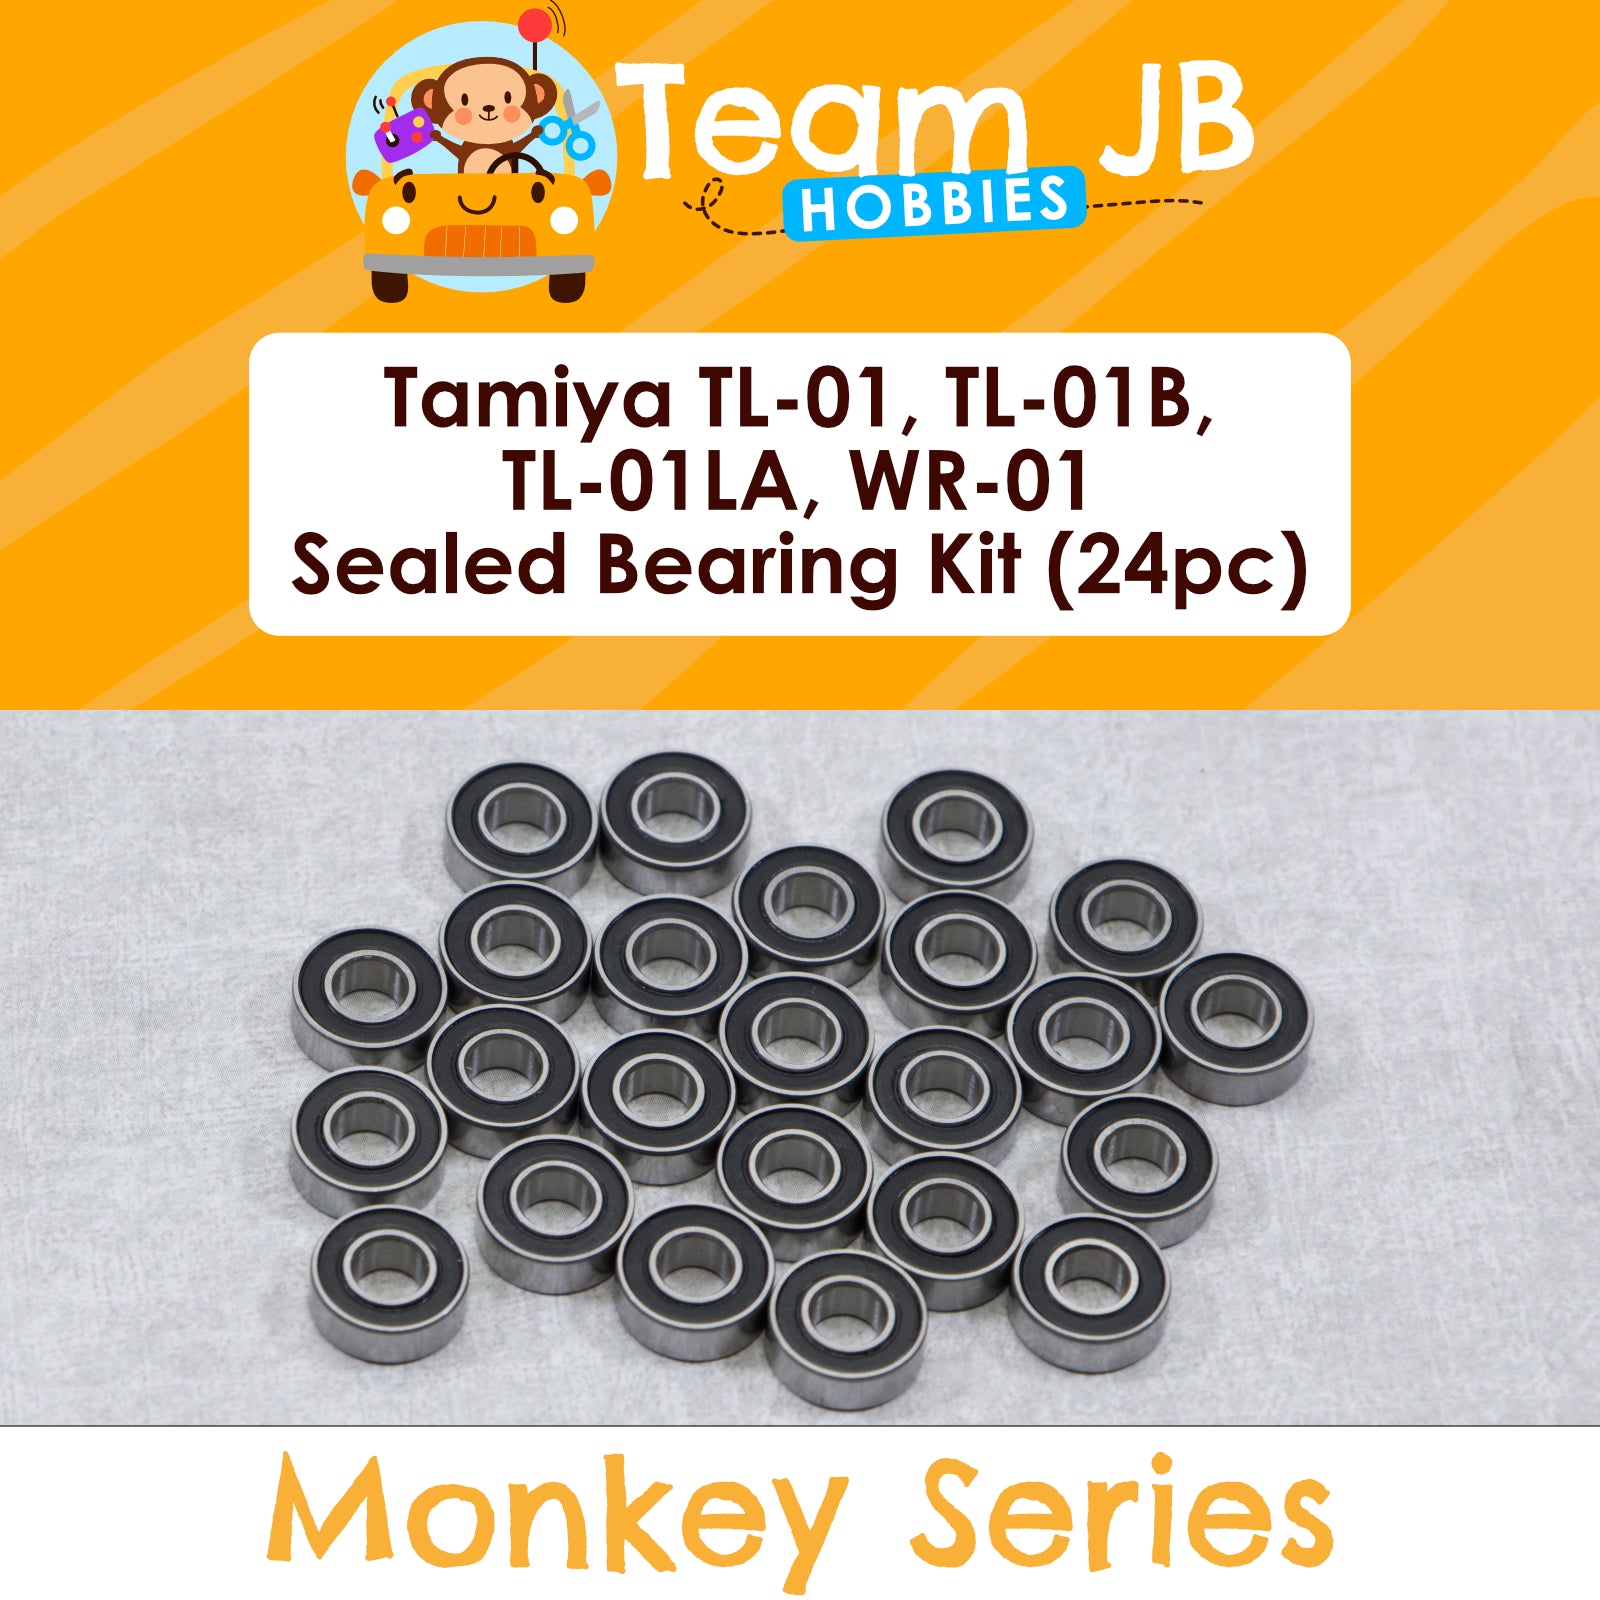 Tamiya TL-01, TL-01B, TL-01LA, WR-01 - Sealed Bearing Kit